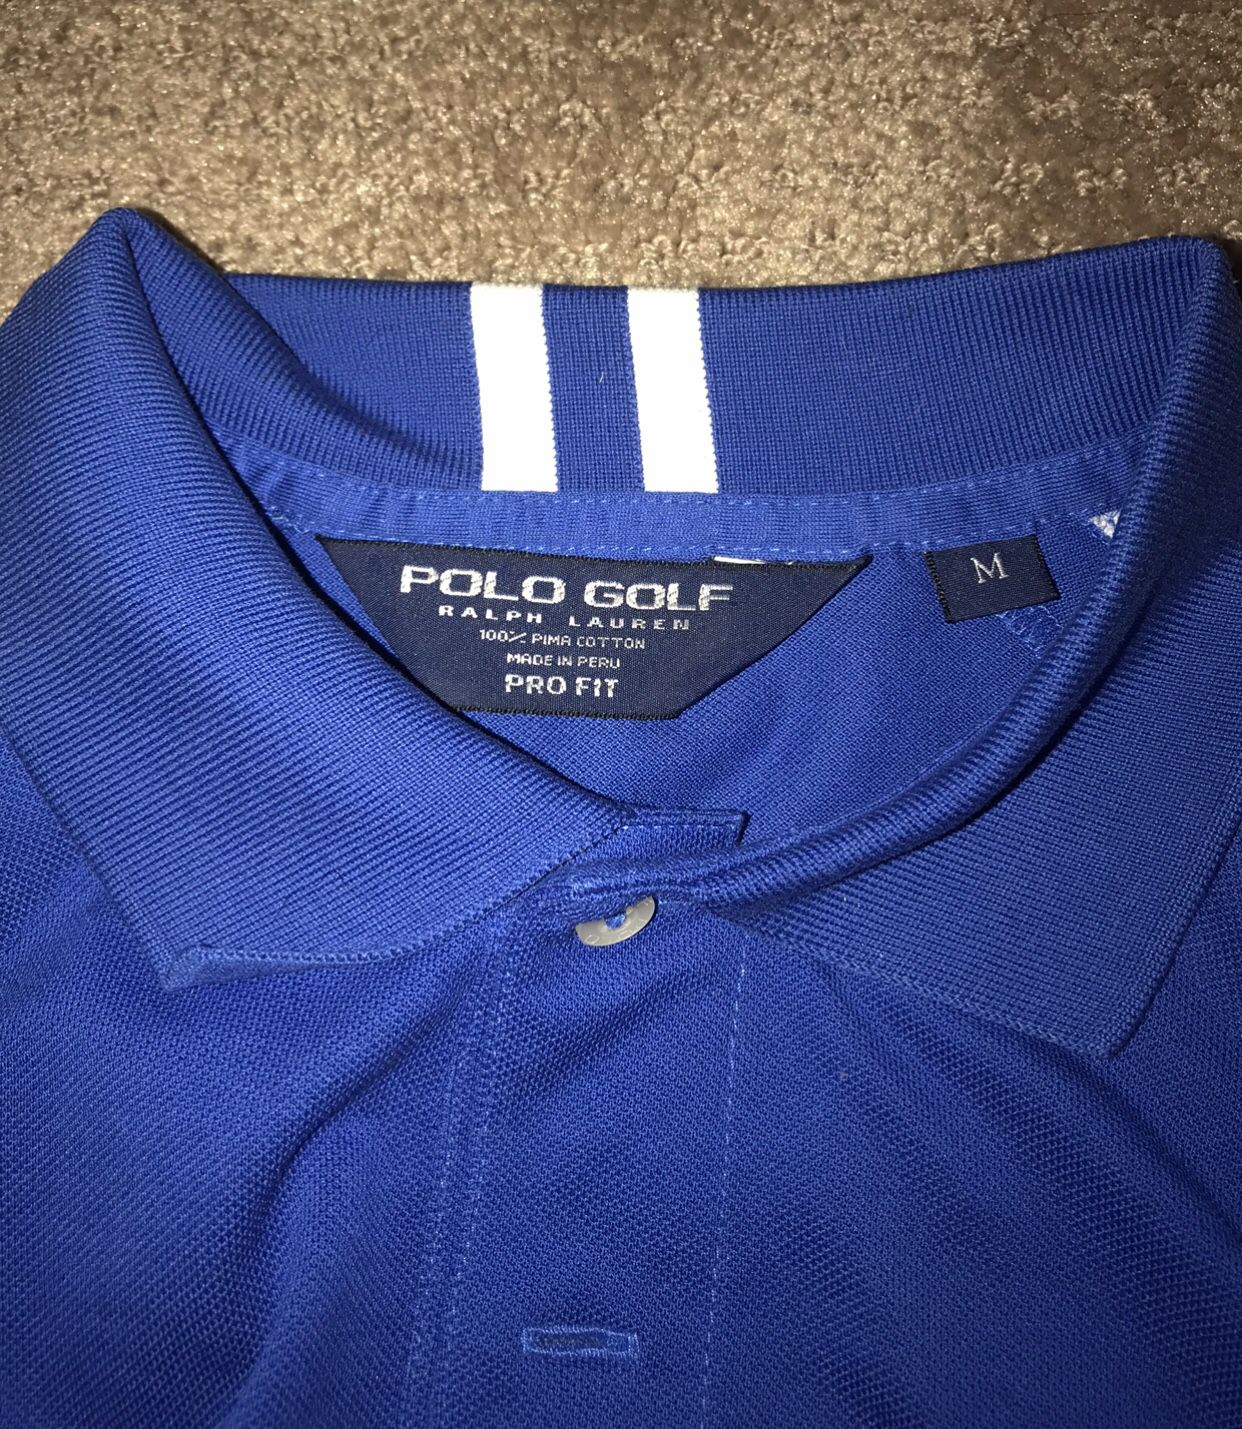 Ralph Lauren Polo Golf Shirt